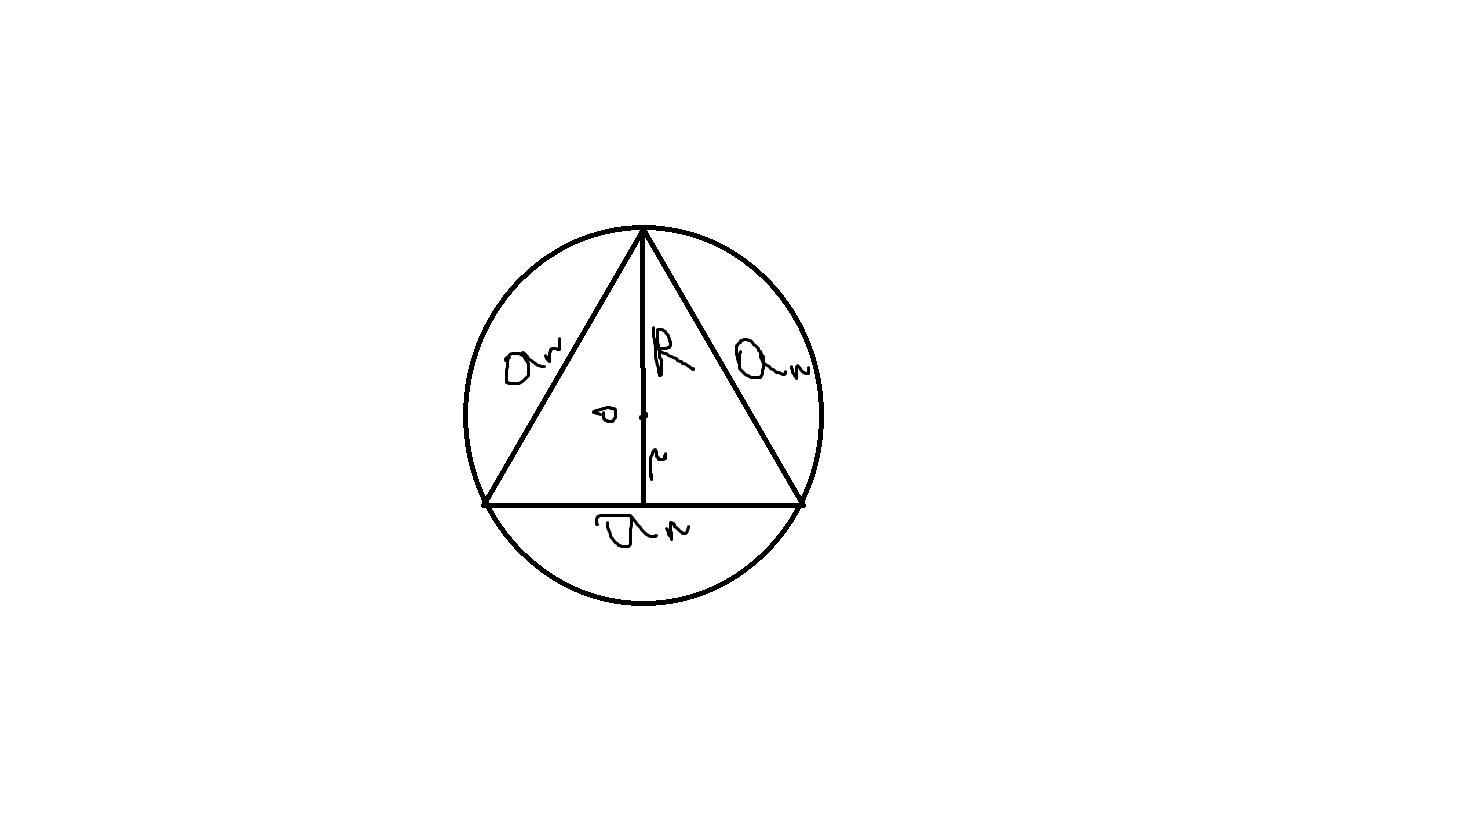 Радиус описанной окружности равностороннего треугольника формула. Радиус окружности описанной около равностороннего треугольника. Радиус описанной окружности равностороннего треугольника. Формула описанной окружности равностороннего треугольника. Равносторонний треугольник вписанный в окружность.